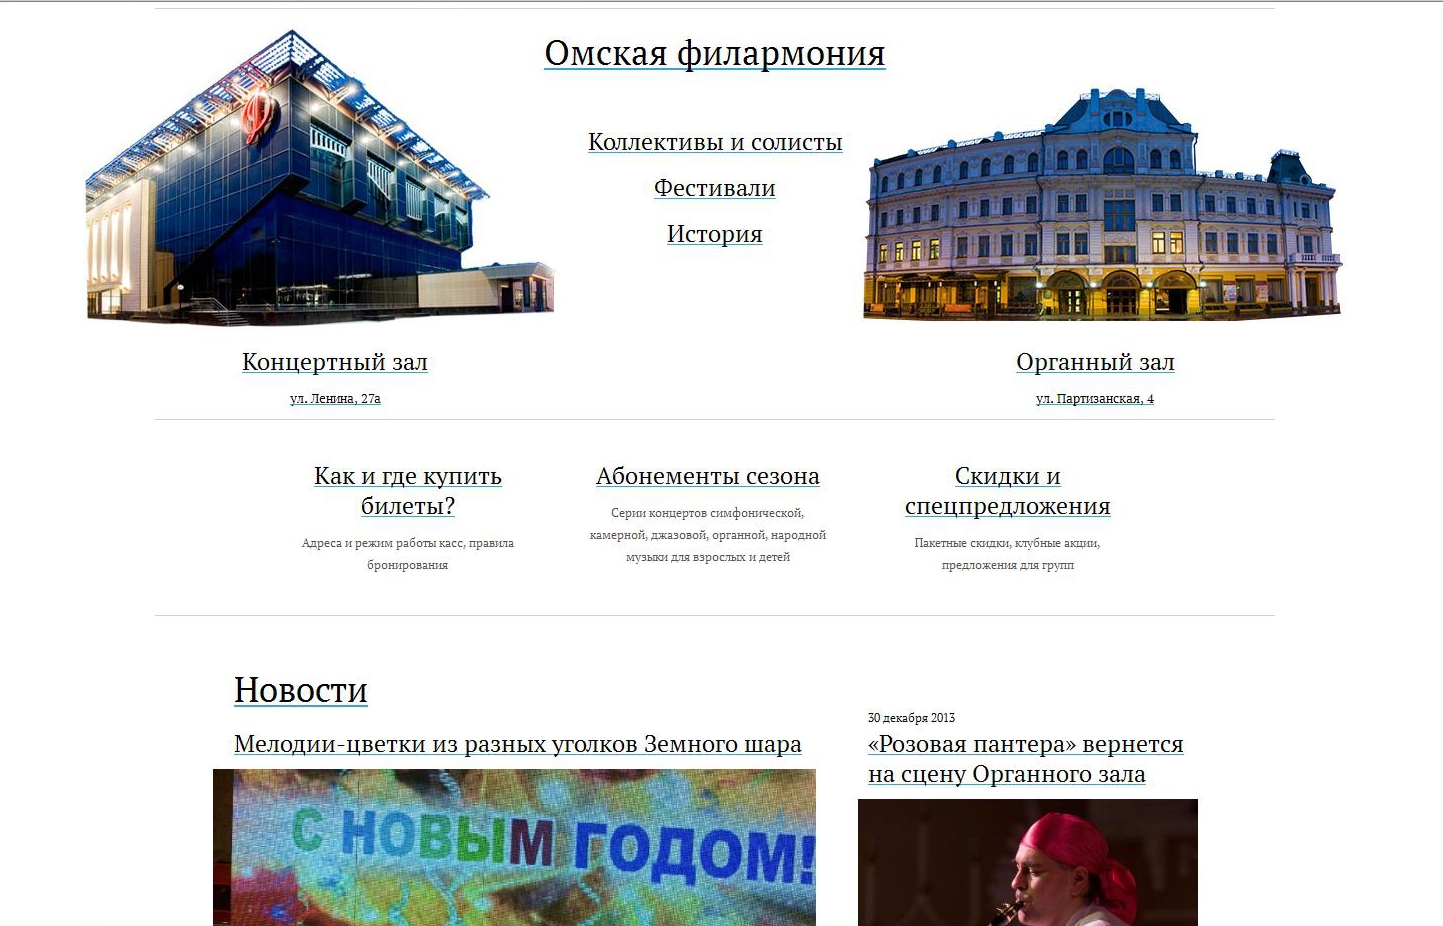 Сайт омской